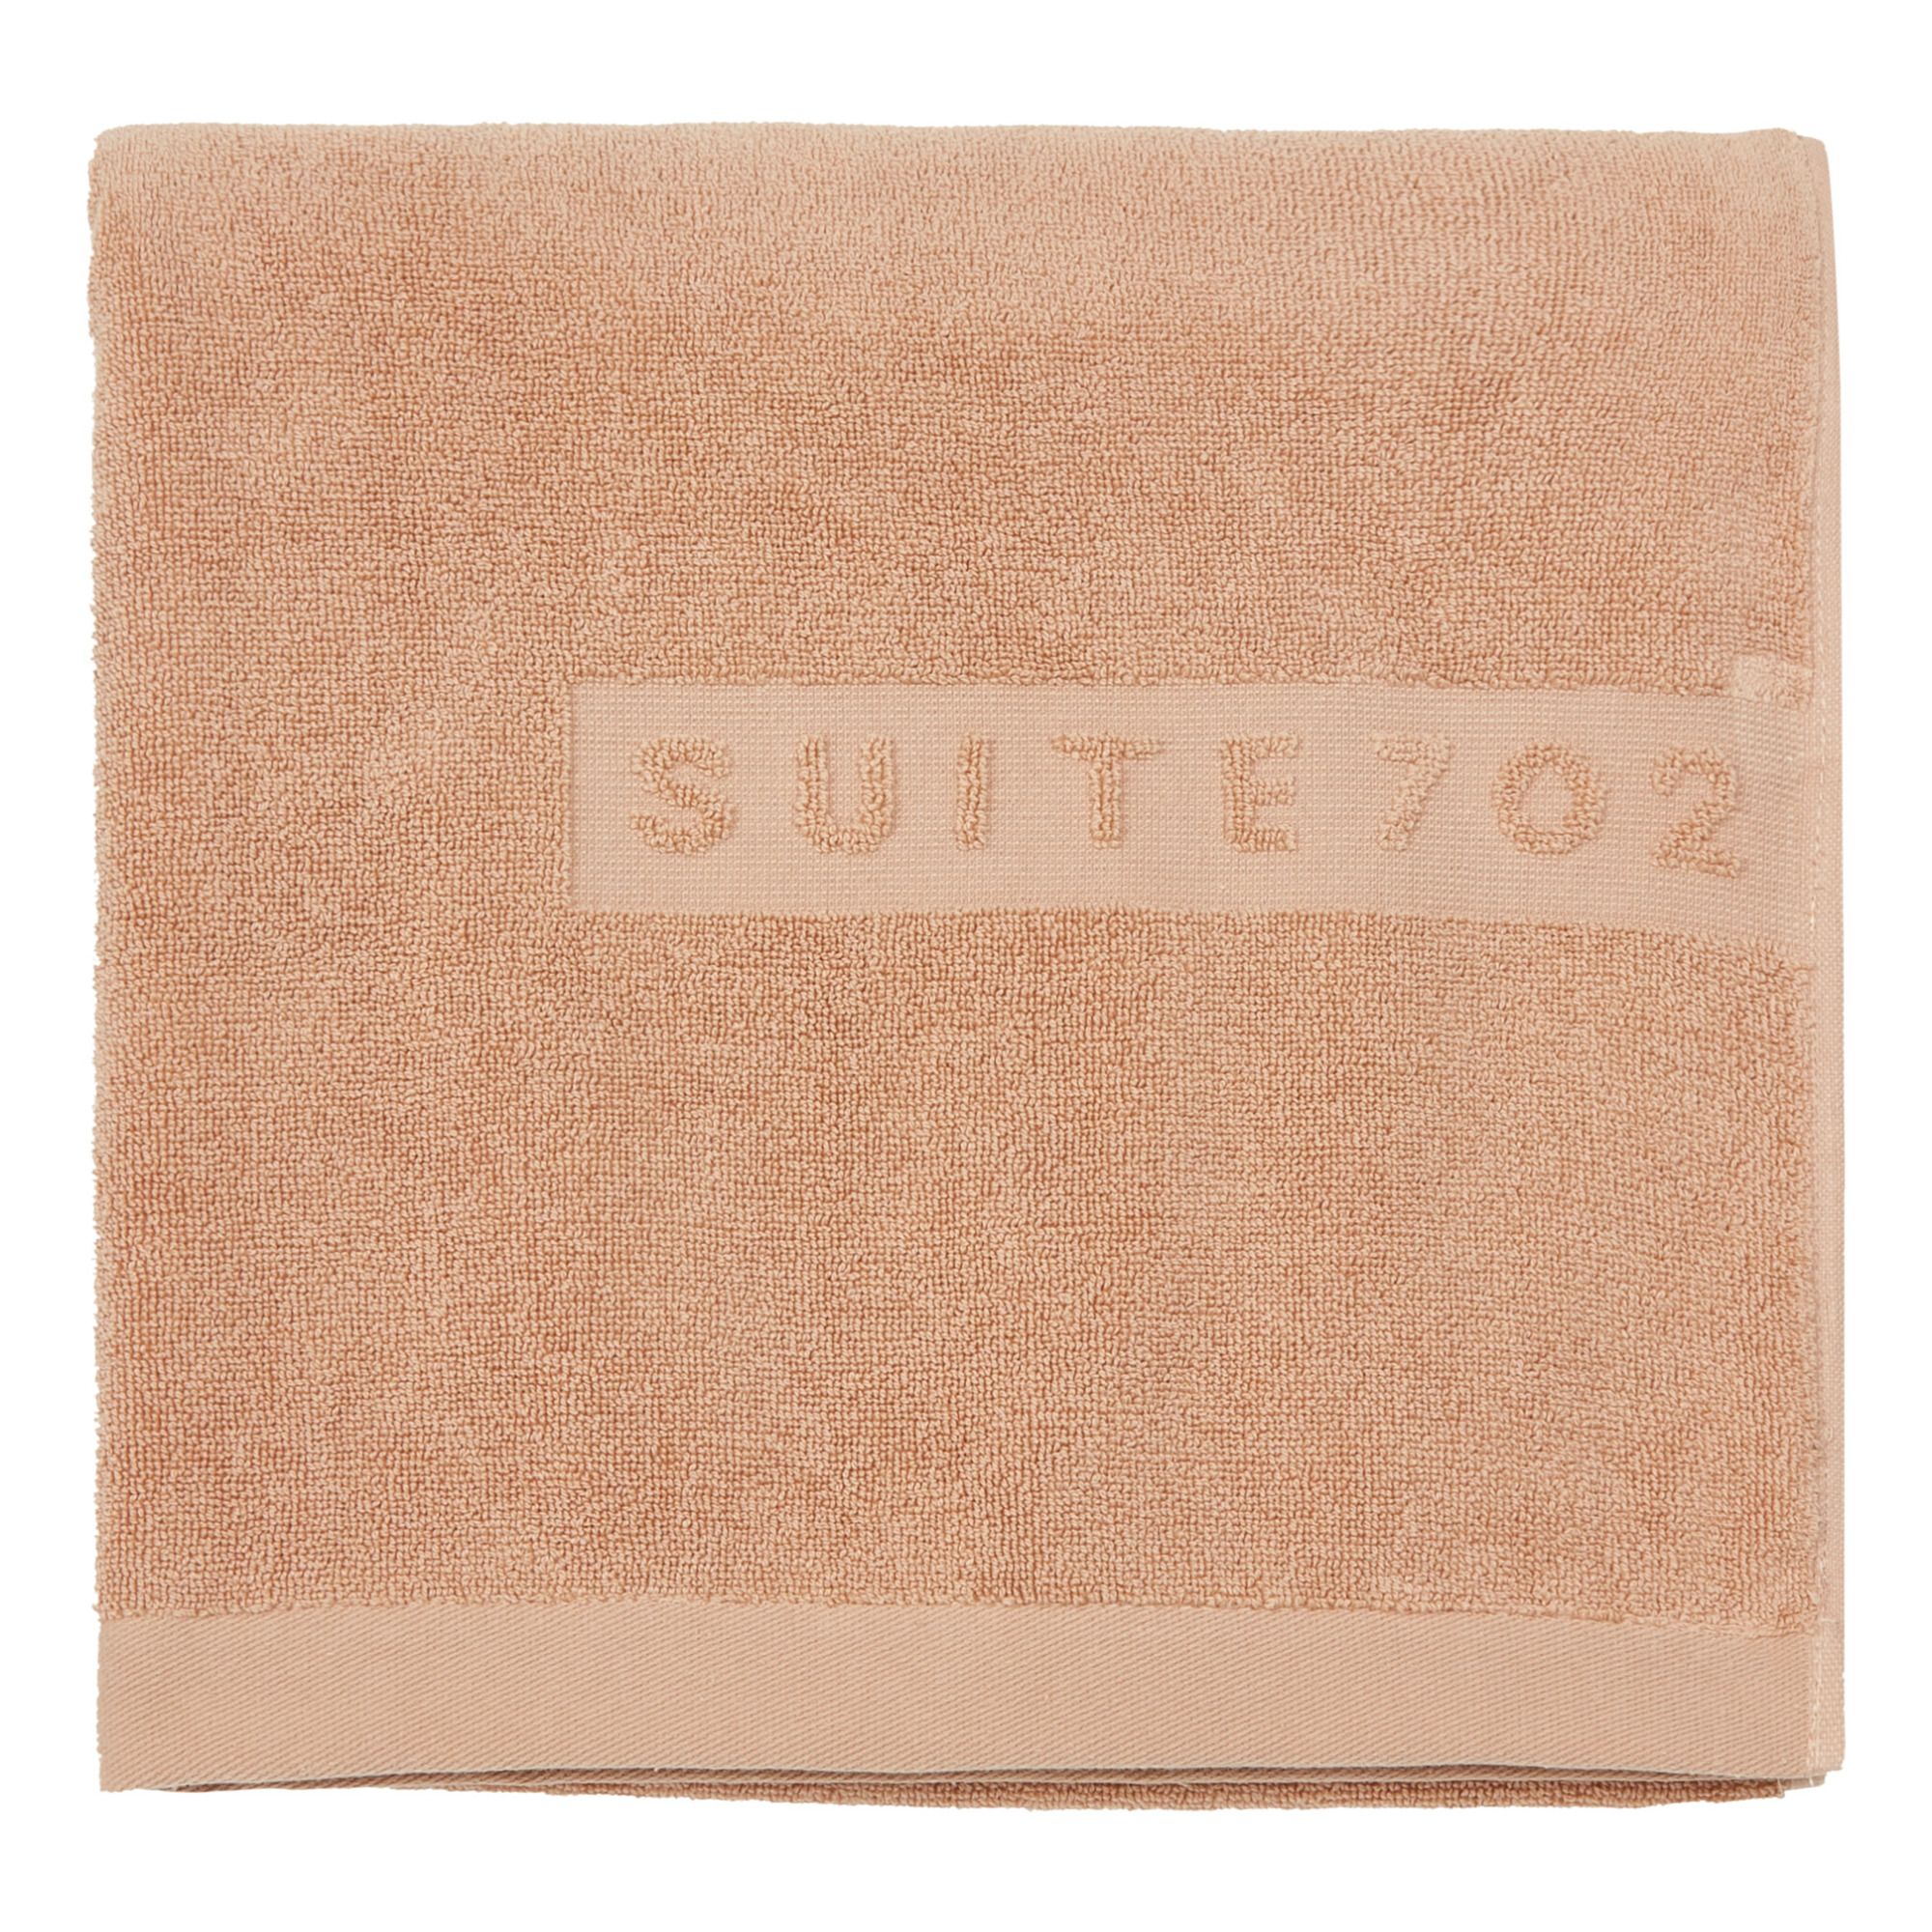 Suite 702 - Drap de bain en coton bio - Blush